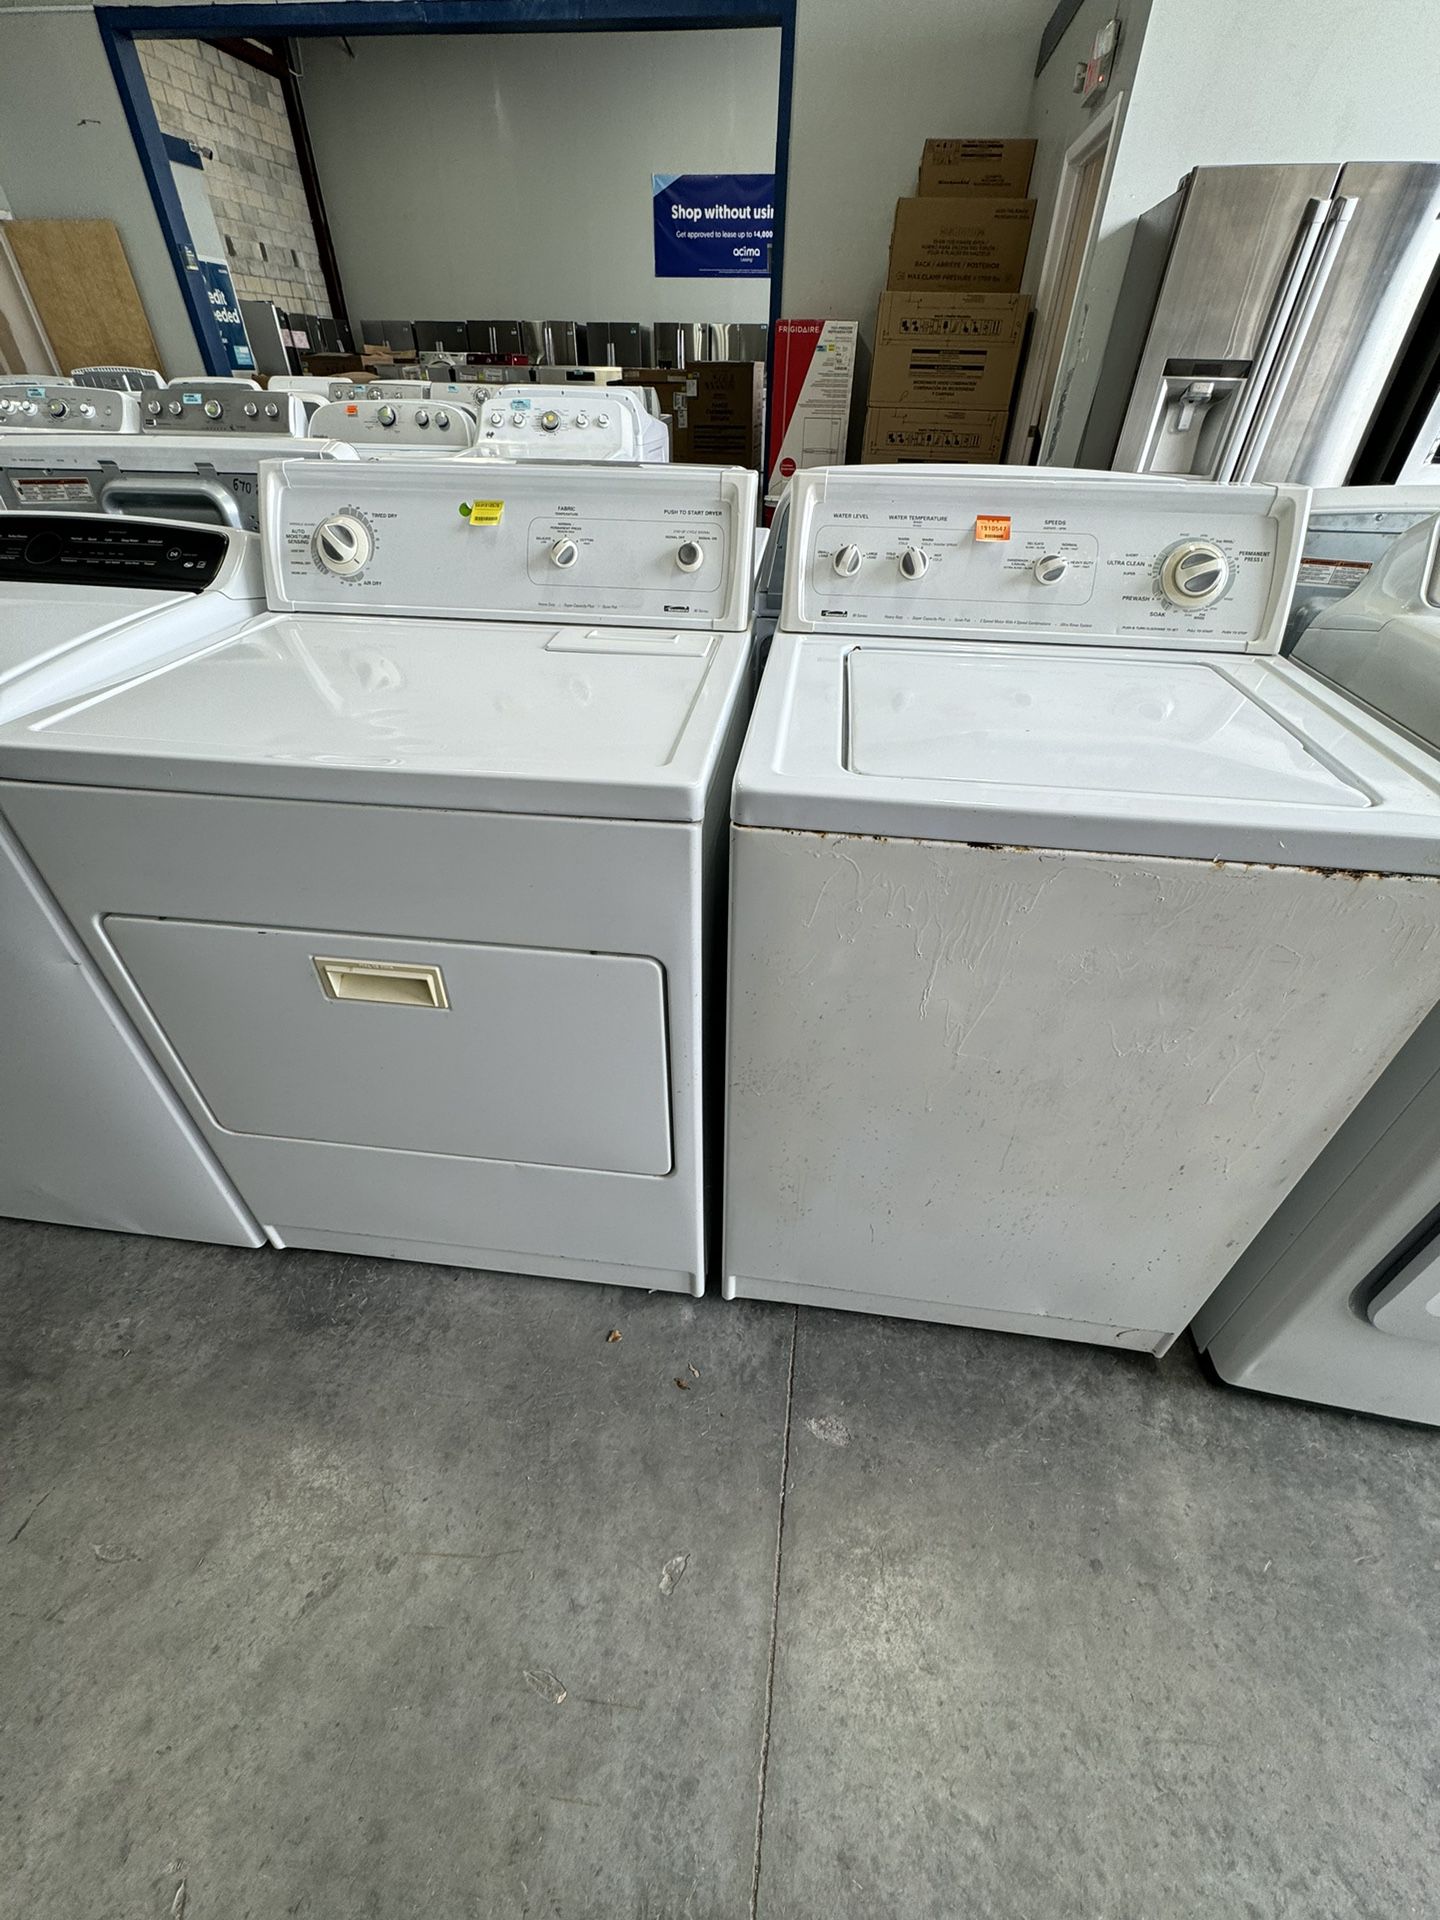 Kenmore Set Washing Machine & Electric Dryer 